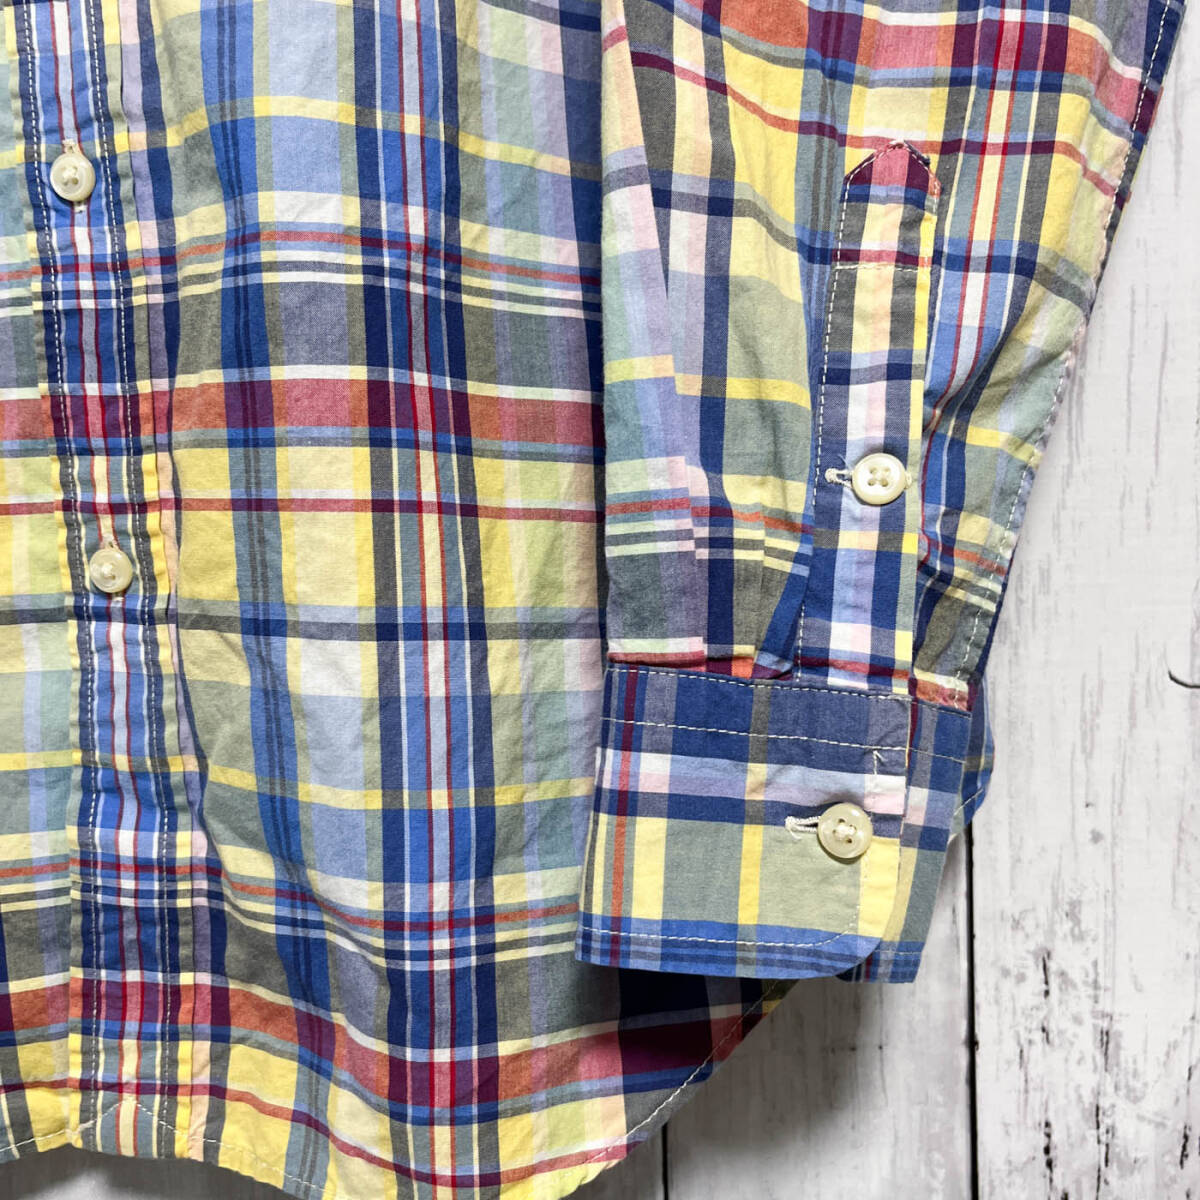 ラルフローレン Ralph Lauren チェックシャツ 長袖シャツ レディース ワンポイント コットン100% XLサイズ 5‐500